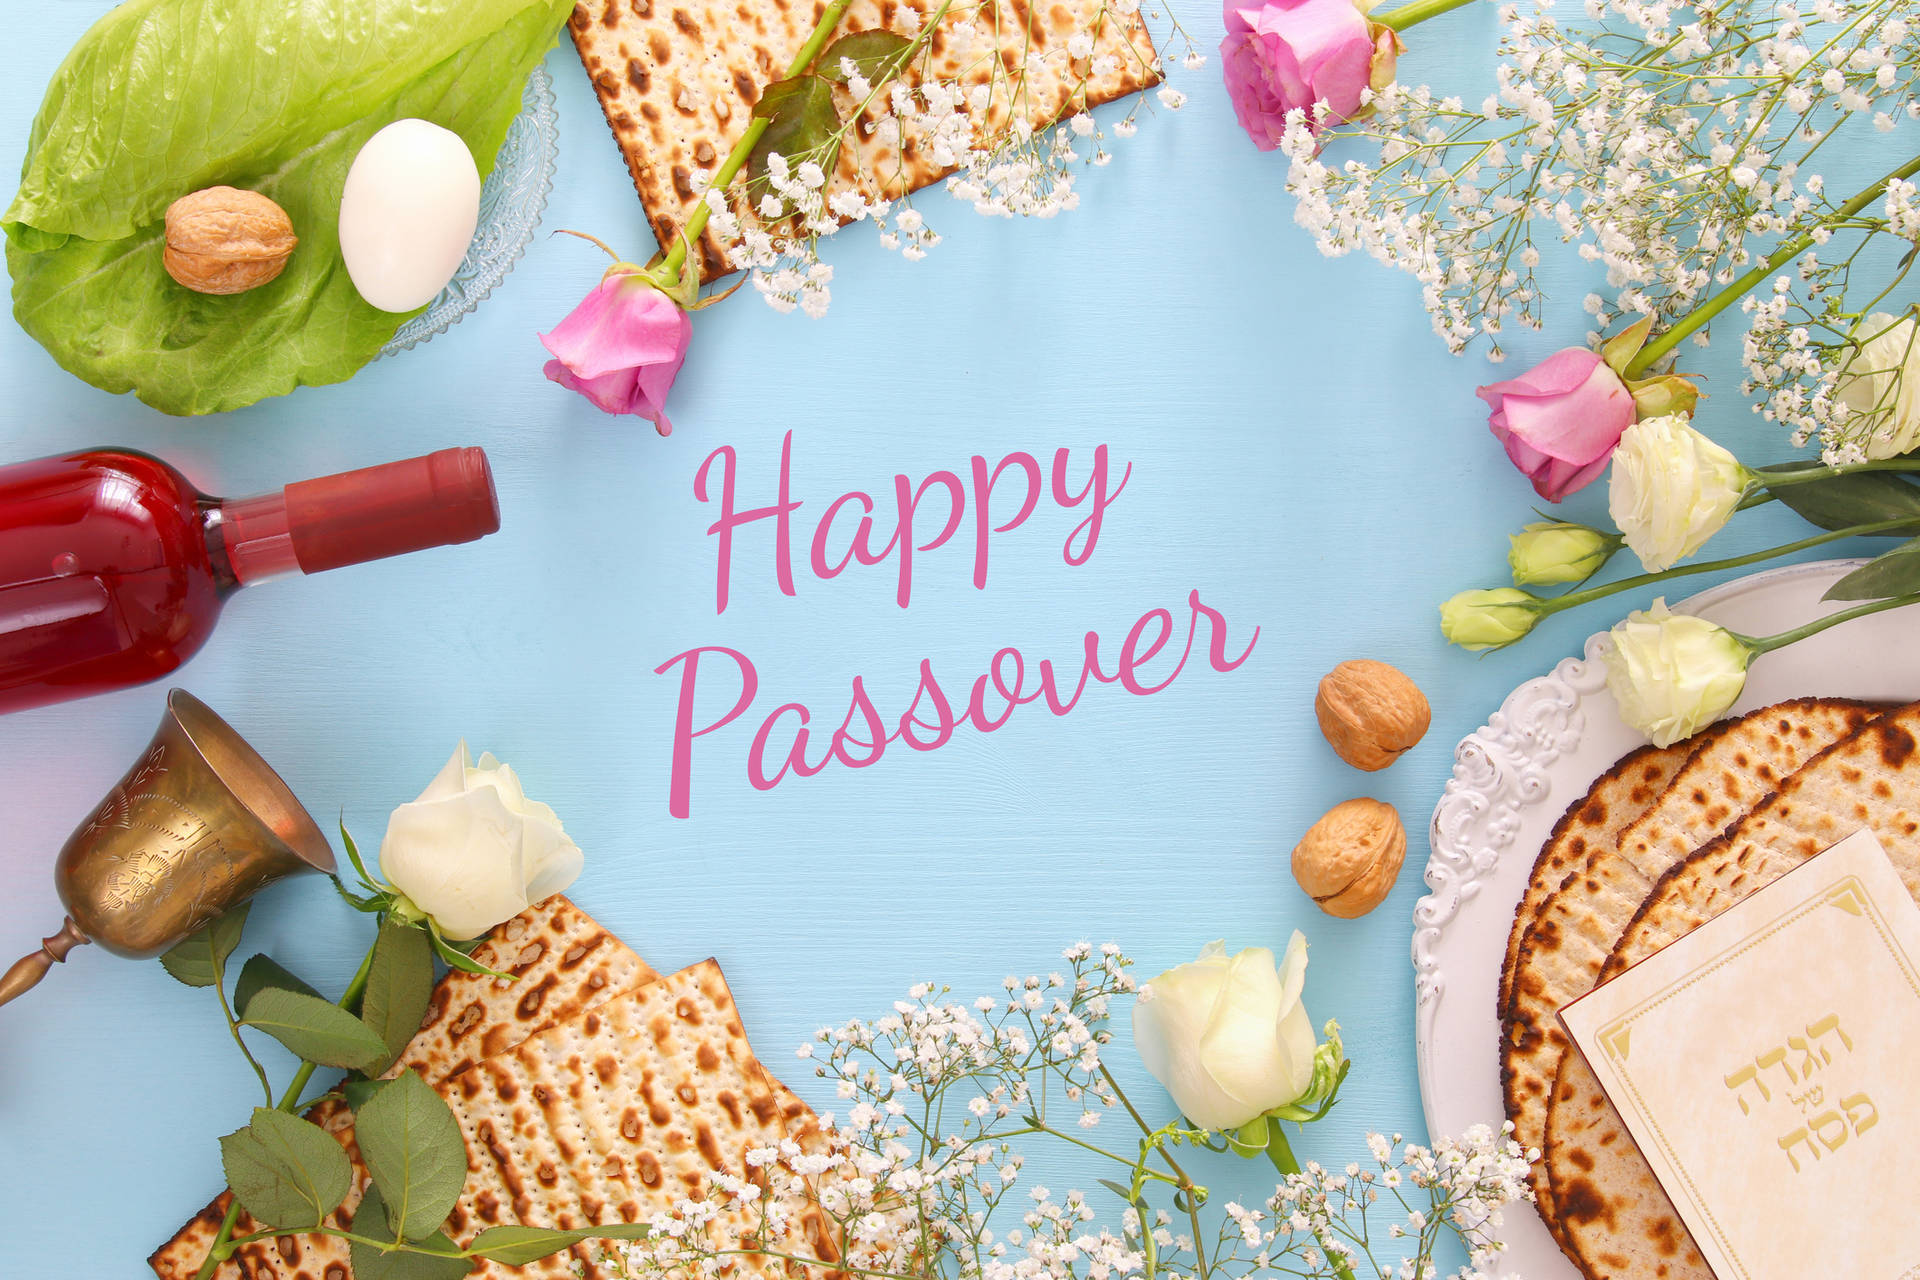 Passover Wallpaper